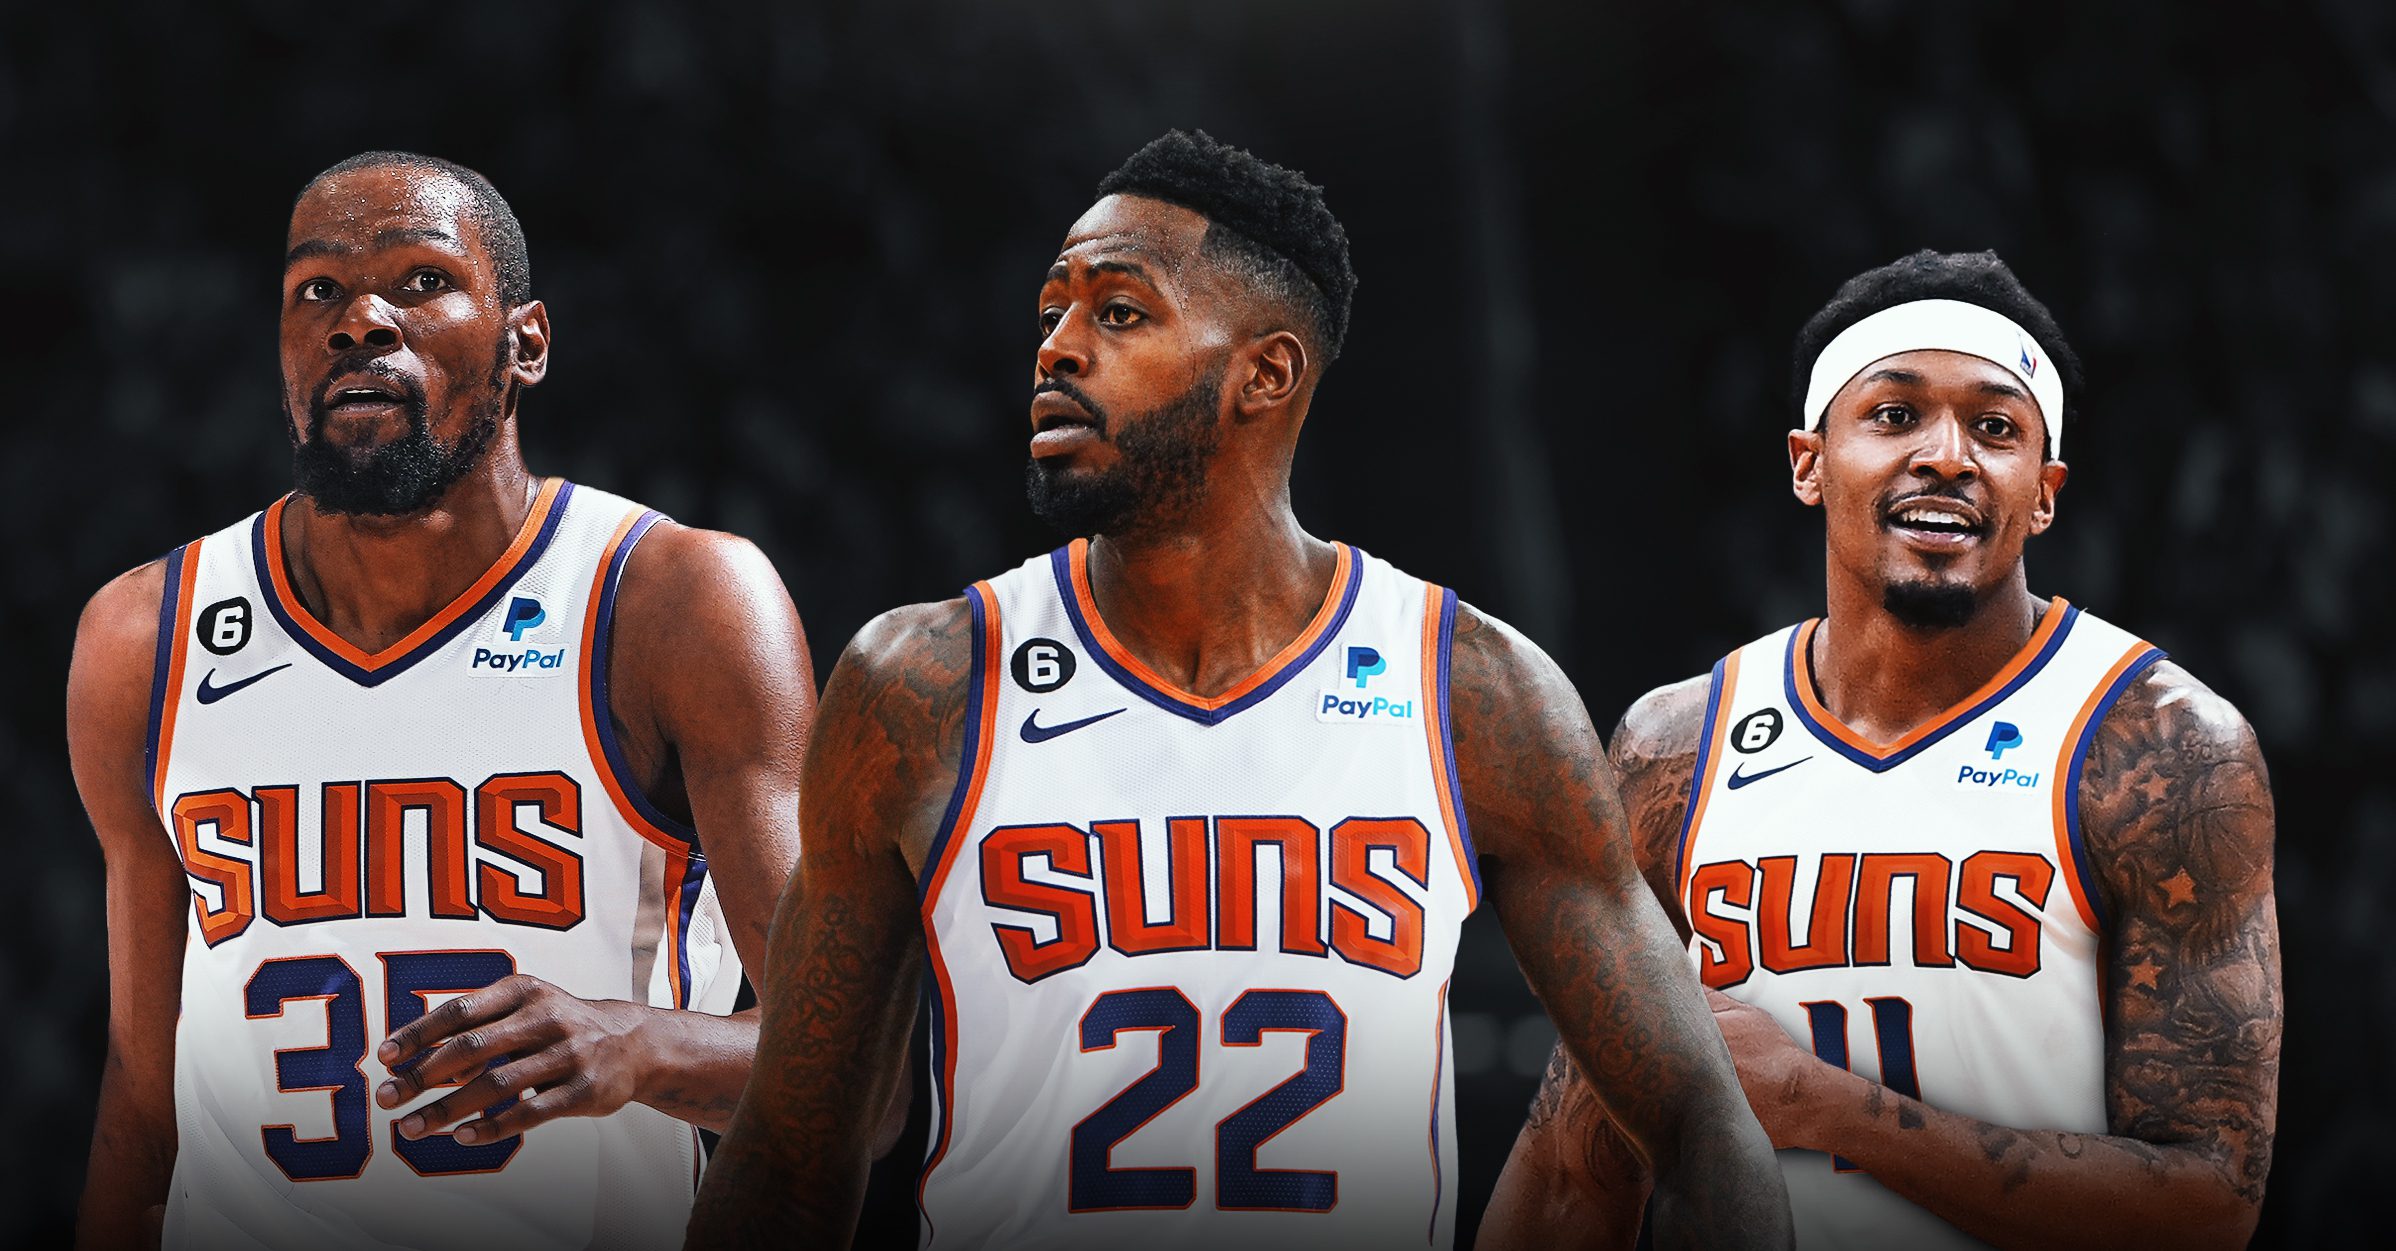 Suns, Warriors Free Agent için En İyi İniş Noktası Olarak Ortaya Çıkıyor